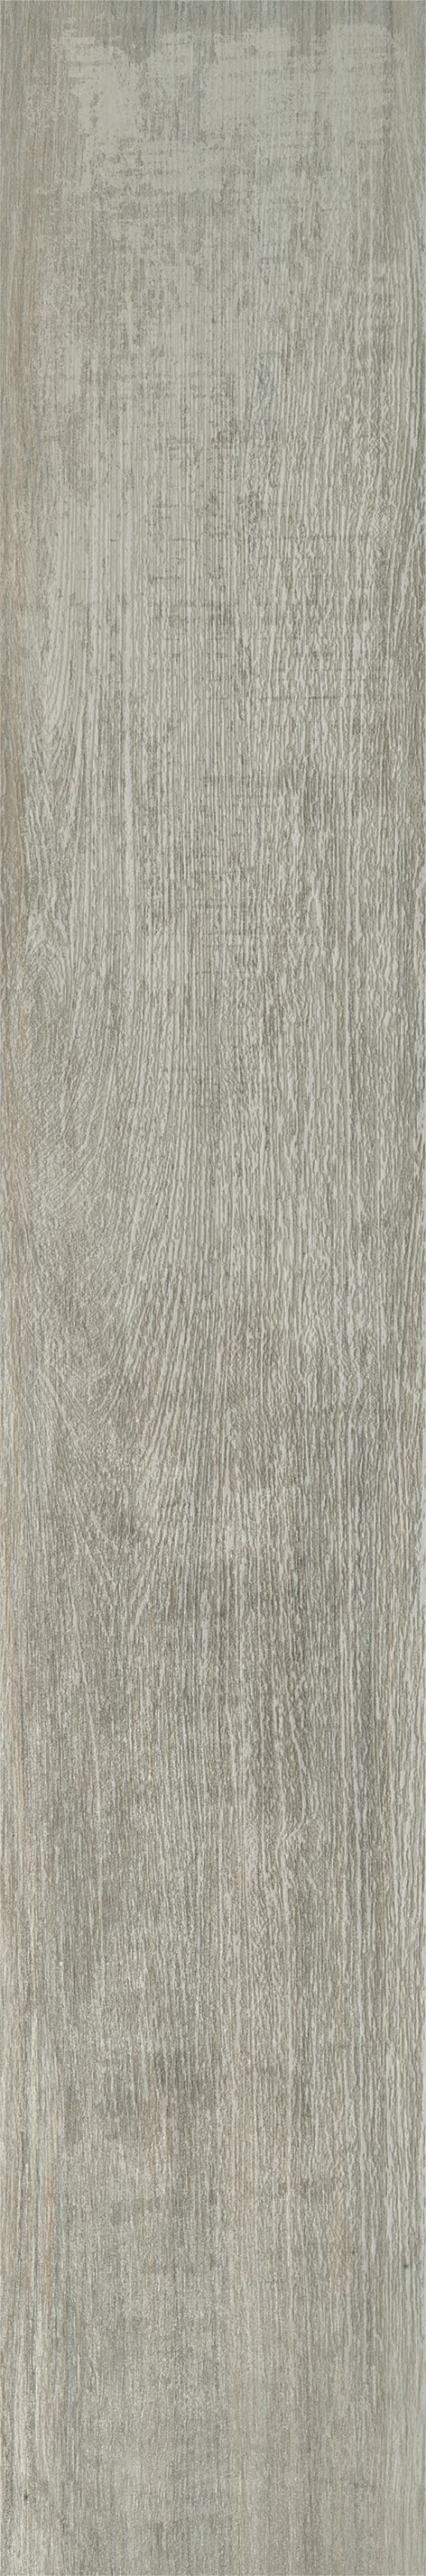 Плитка из керамогранита матовая Italon Грув 20x120 серый (610010001883) плитка из керамогранита матовая italon грув 9 5x60 бежевый 610010001886